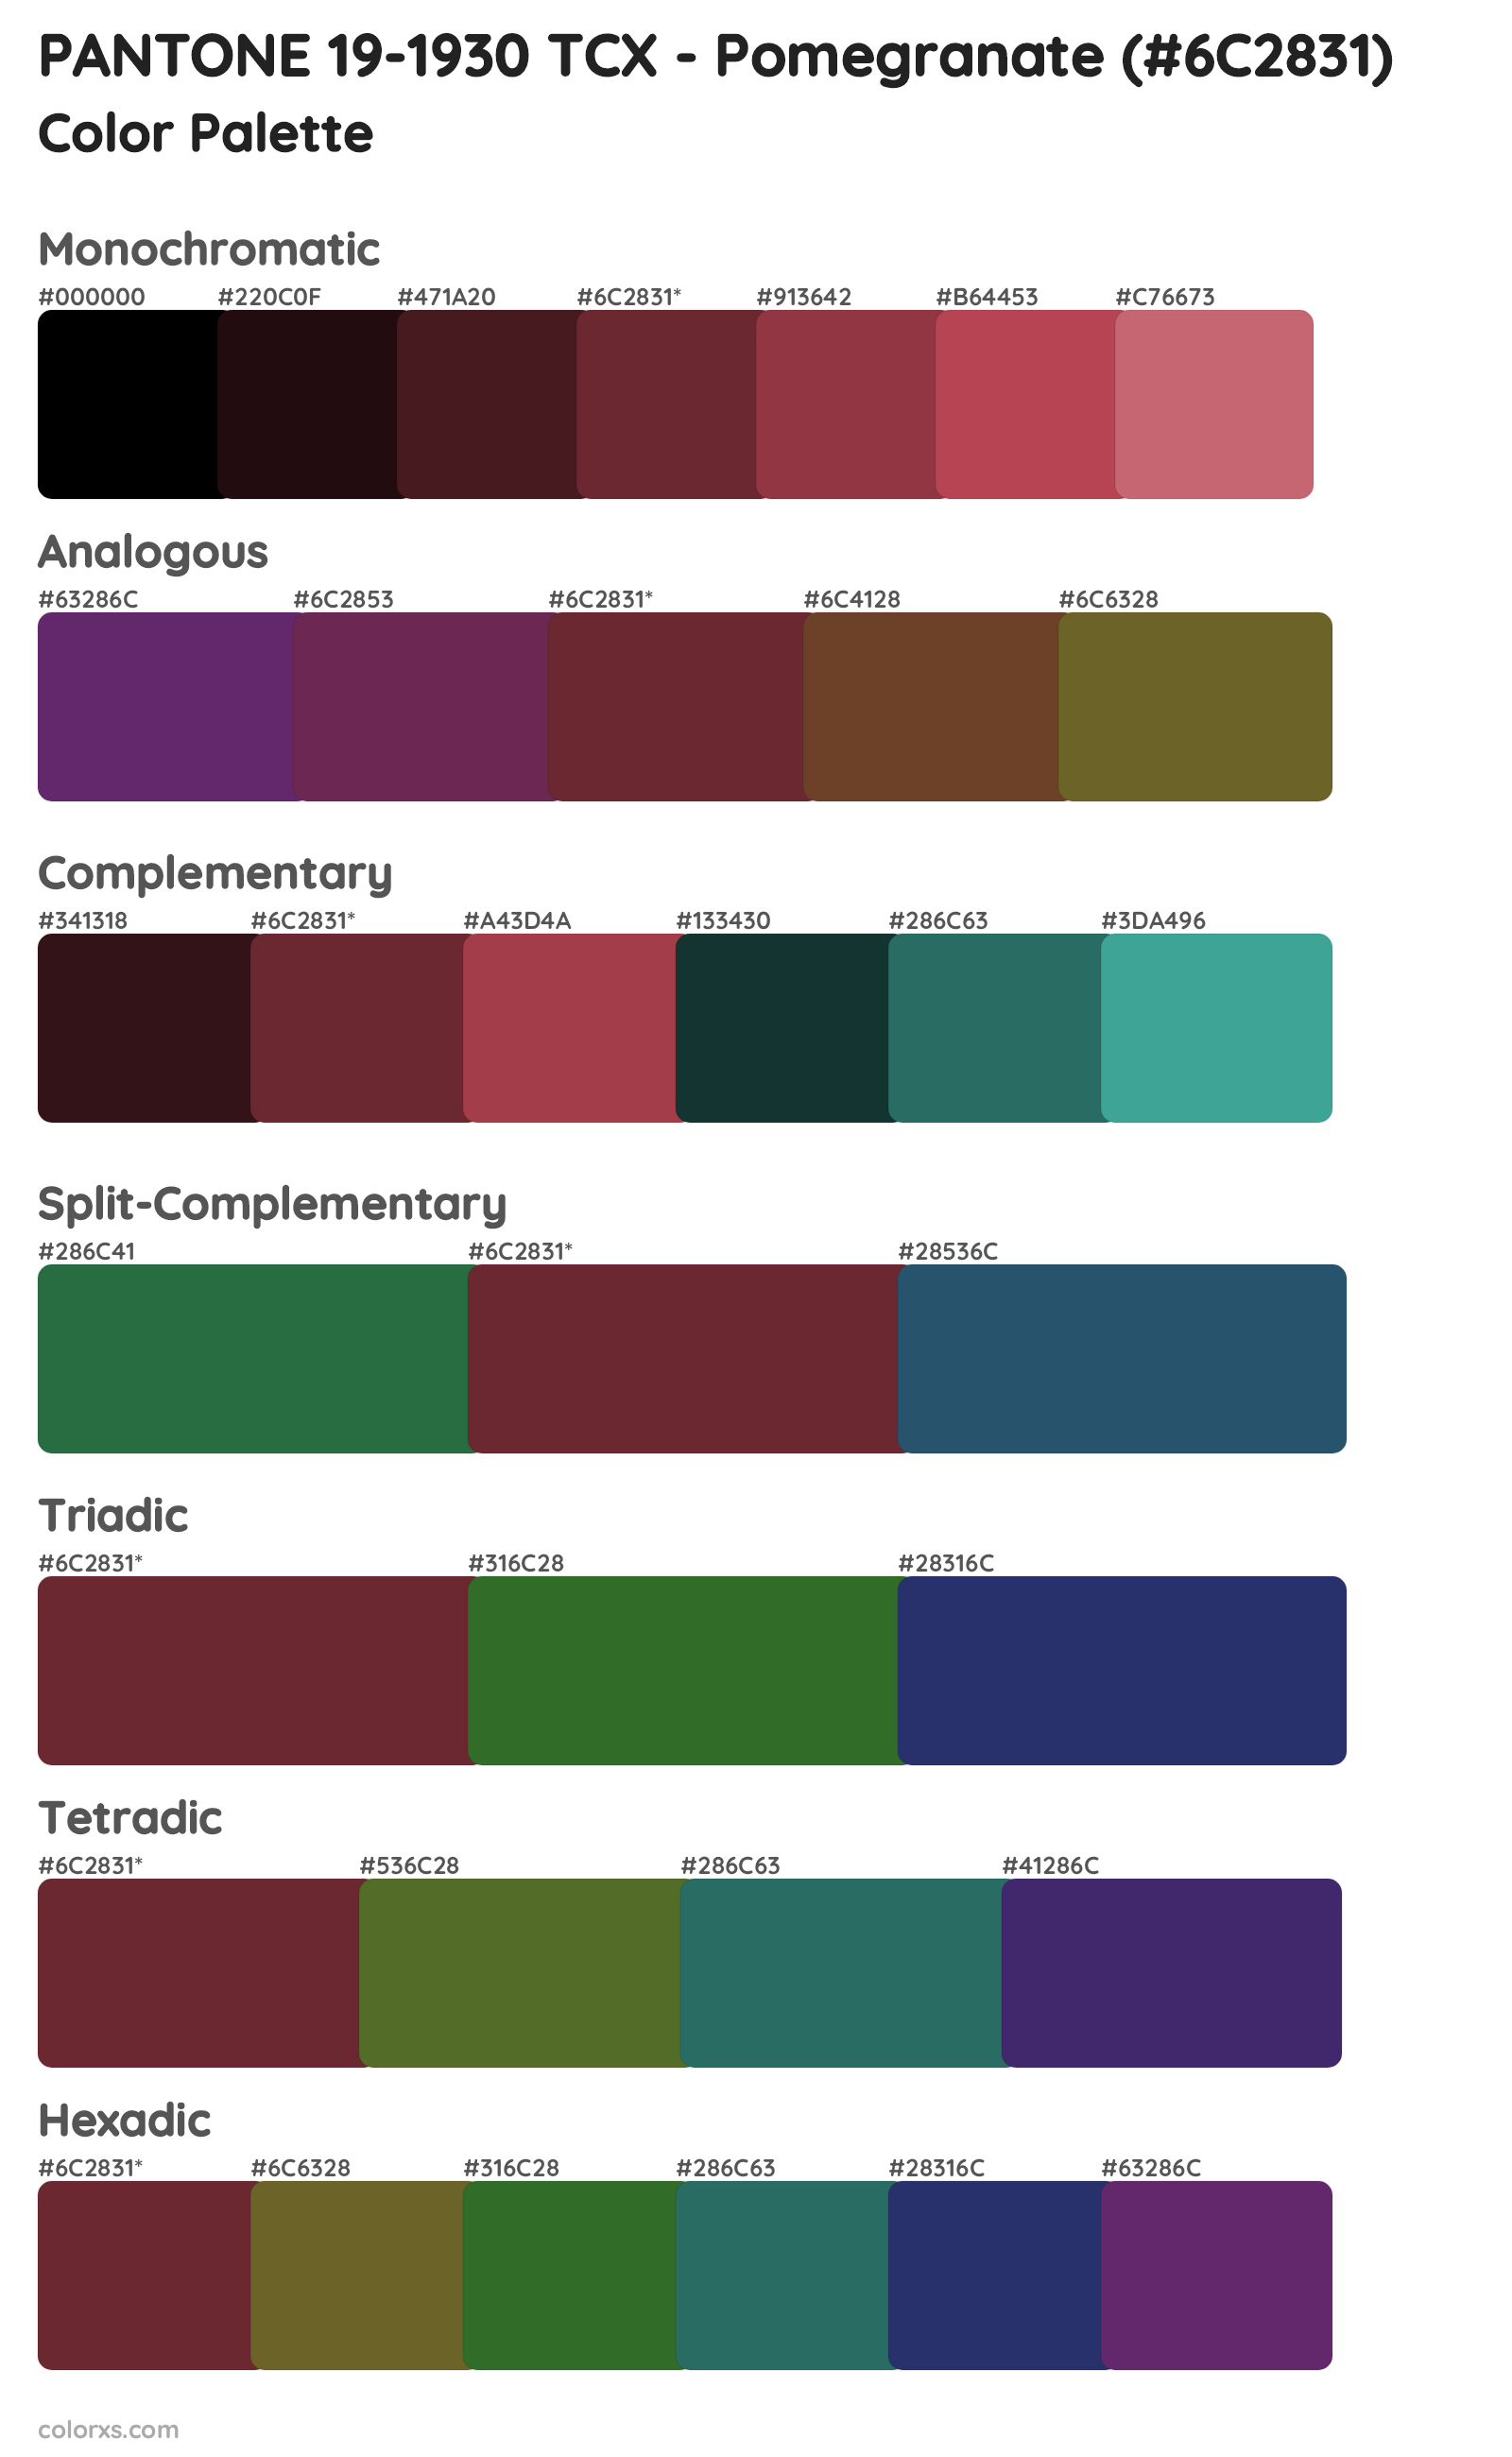 PANTONE 19-1930 TCX - Pomegranate Color Scheme Palettes